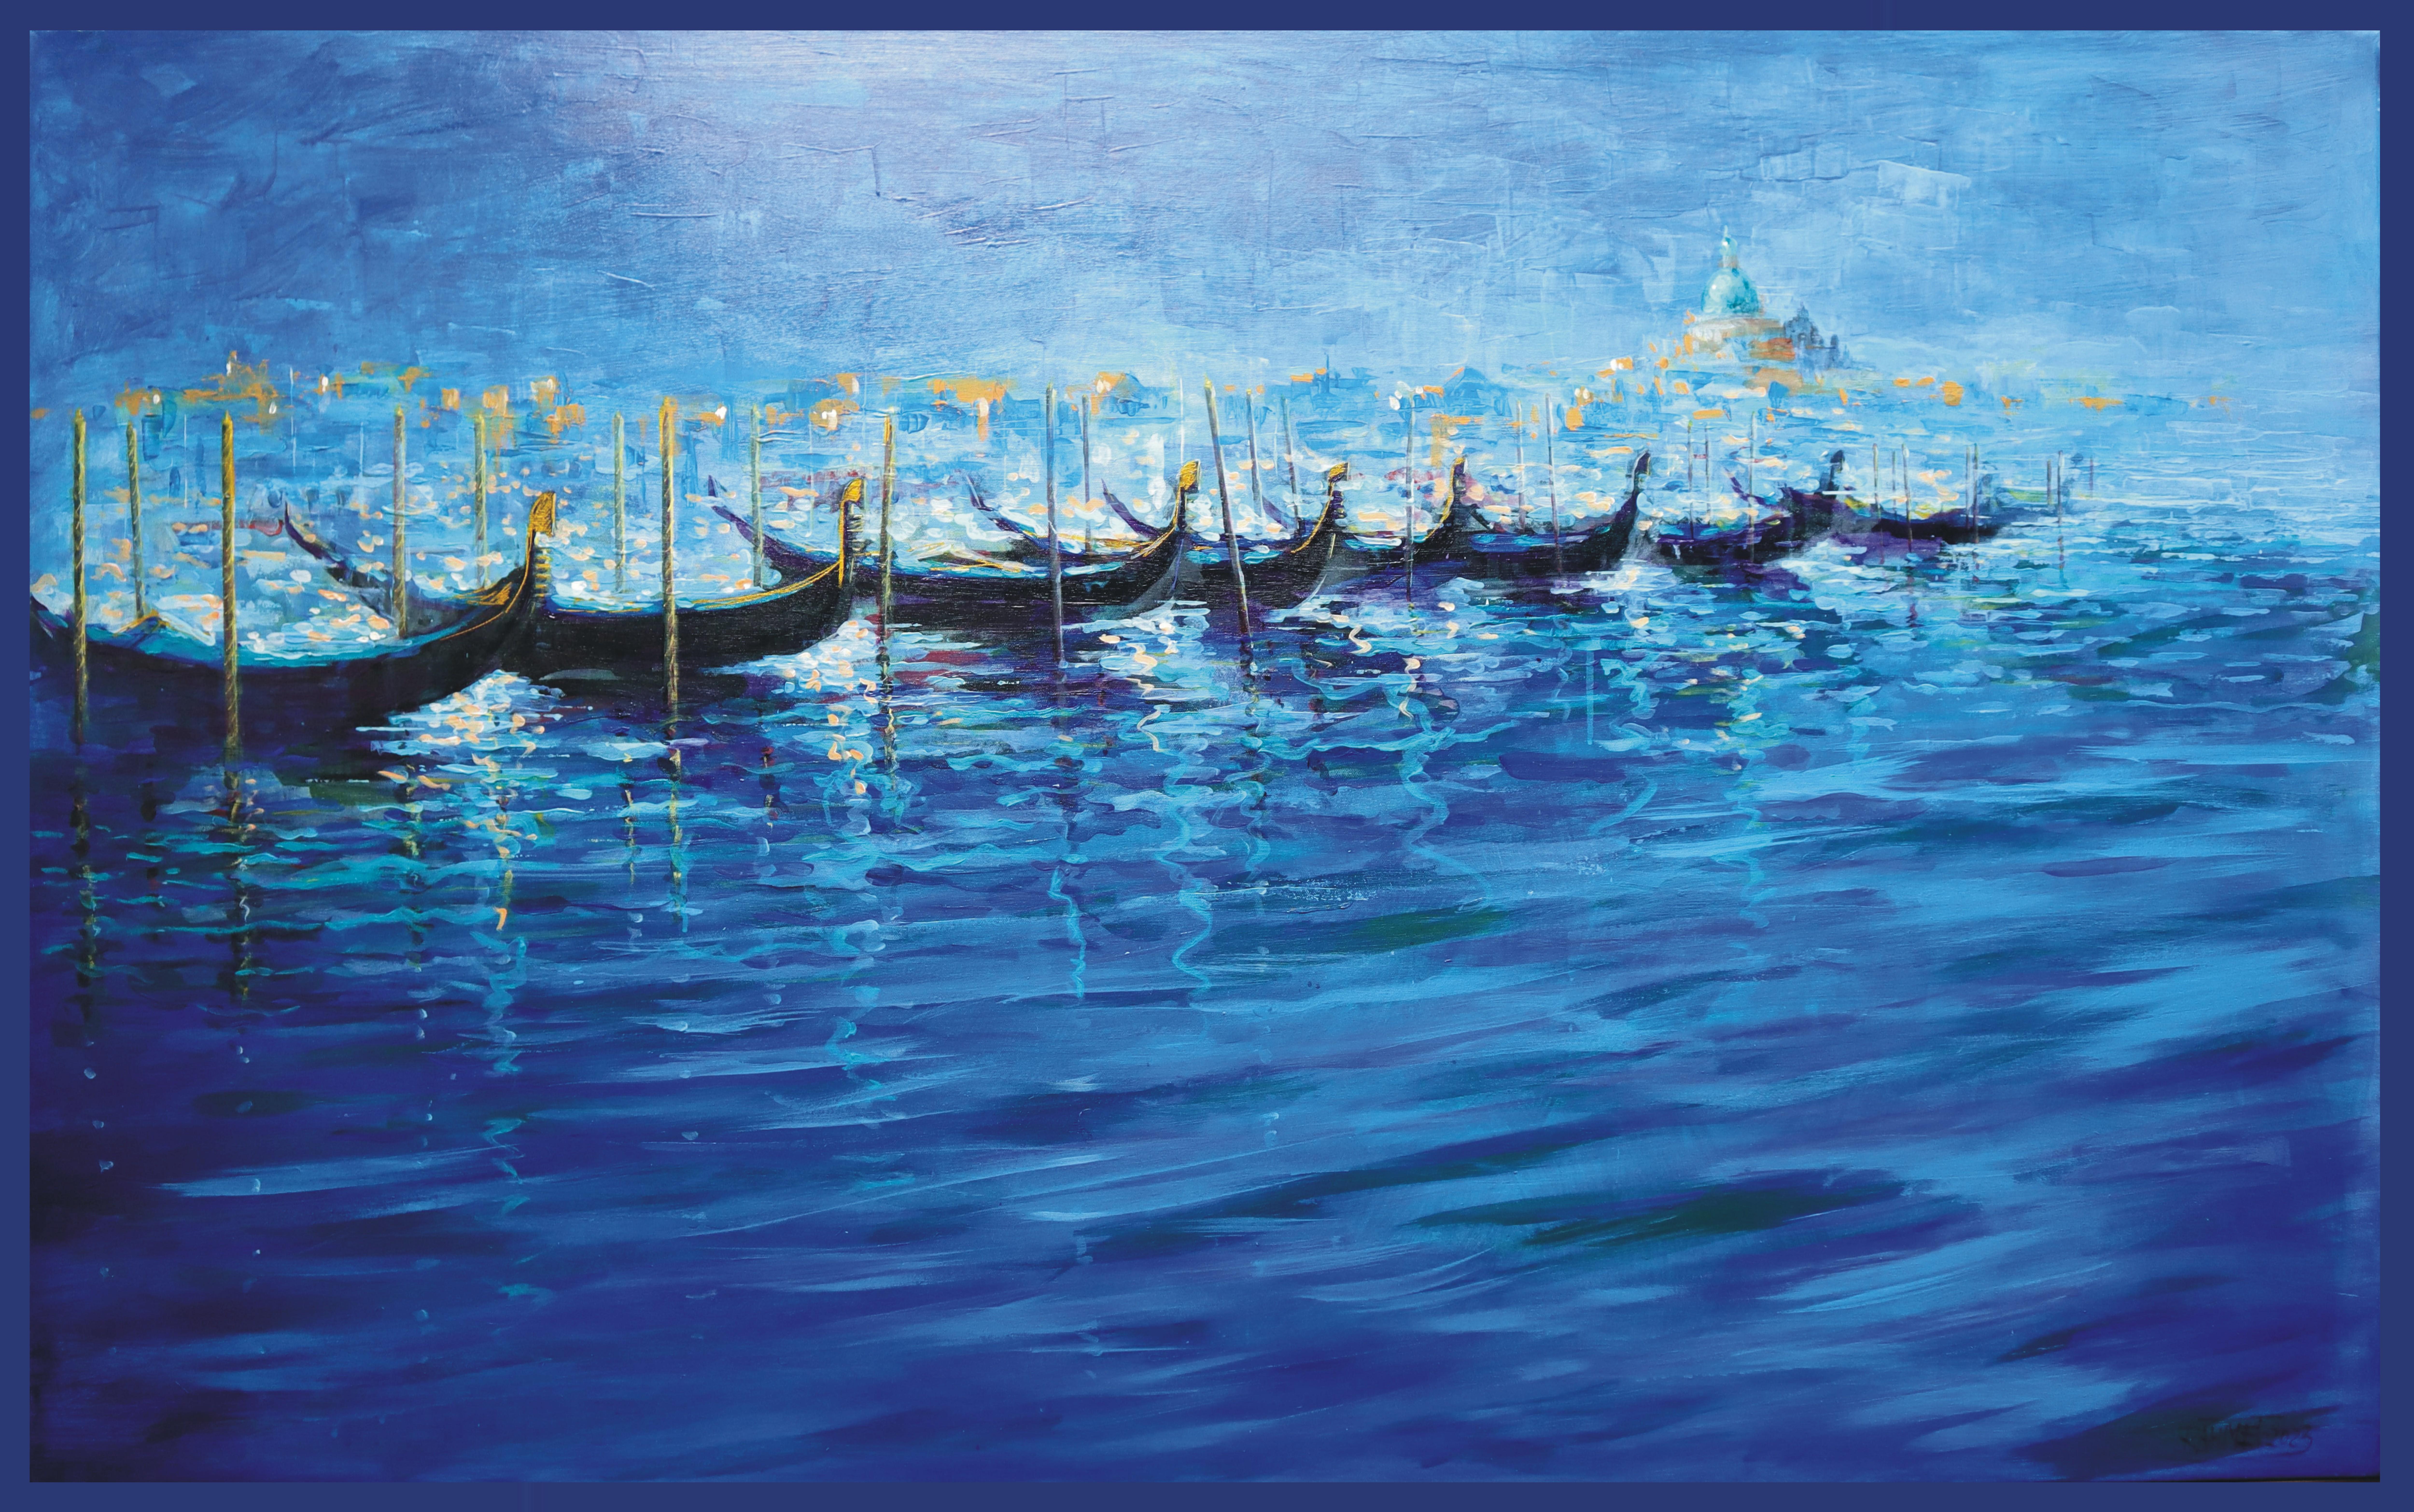 Venice Blue - Painting by RAKHMET REDZHEPOV (RAMZI)